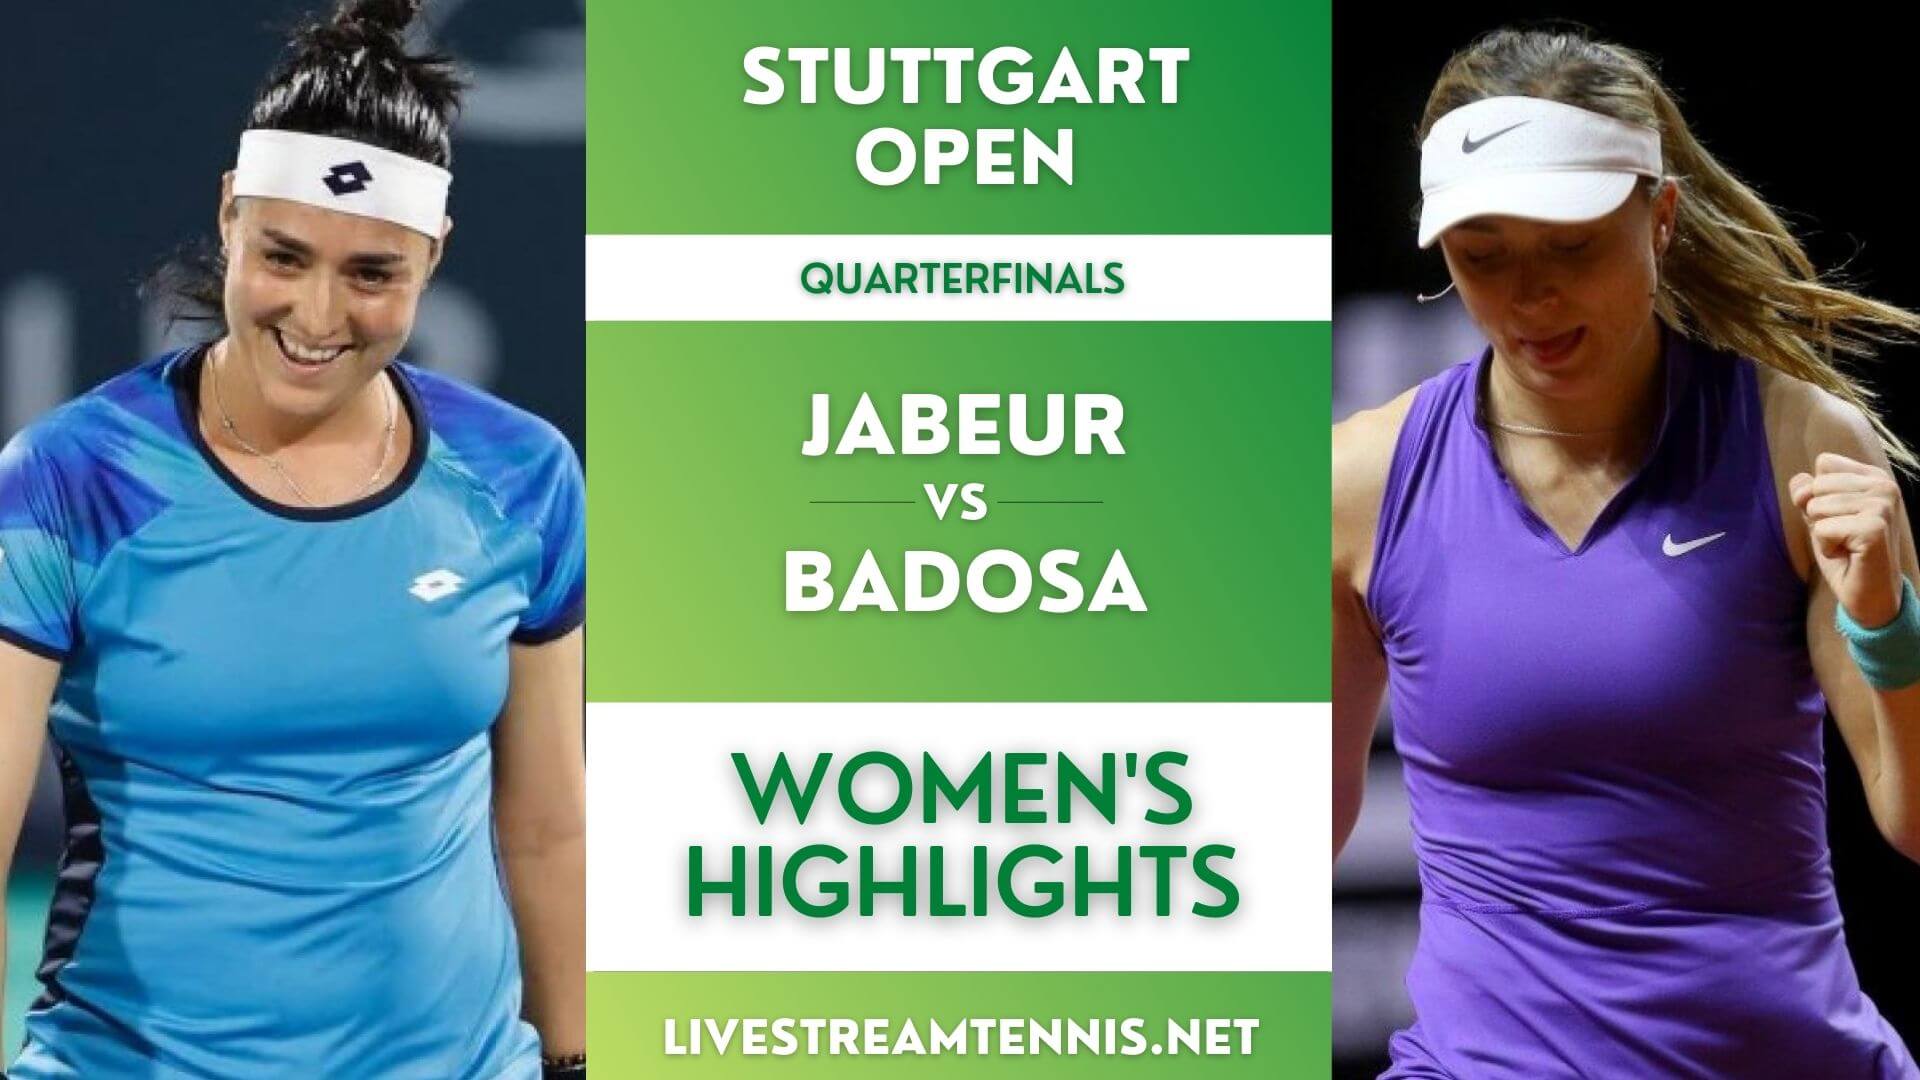 Stuttgart Open Ladies Quarterfinal 4 Highlights 2022